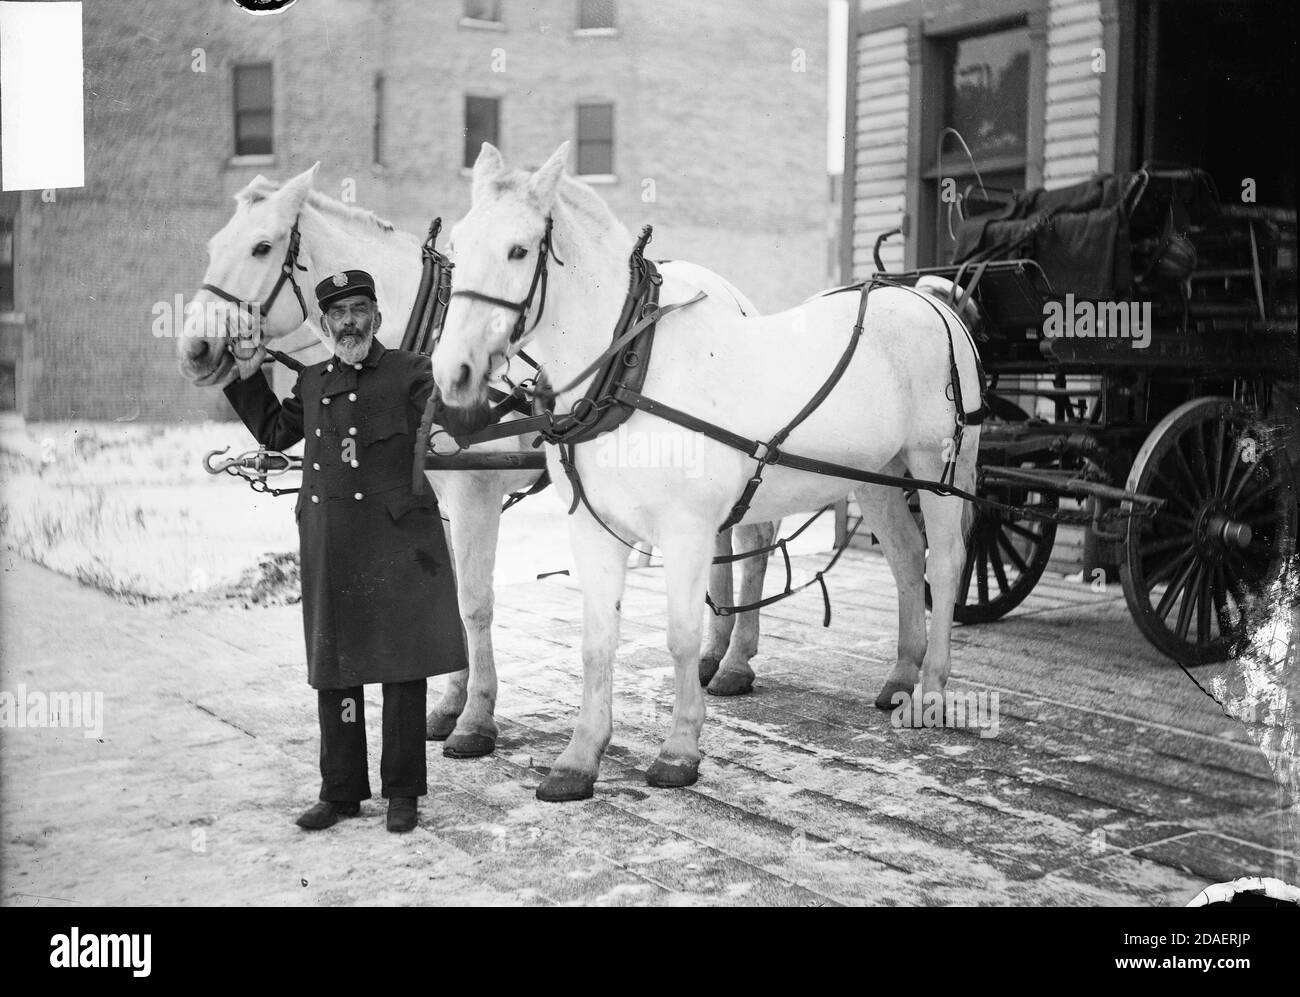 Bild eines Feuerwehrmann, Bonnel, stehend mit zwei weißen Pferden in Chicago, Illinois. Die Pferde werden an einen Wagen gepfercht. Stockfoto